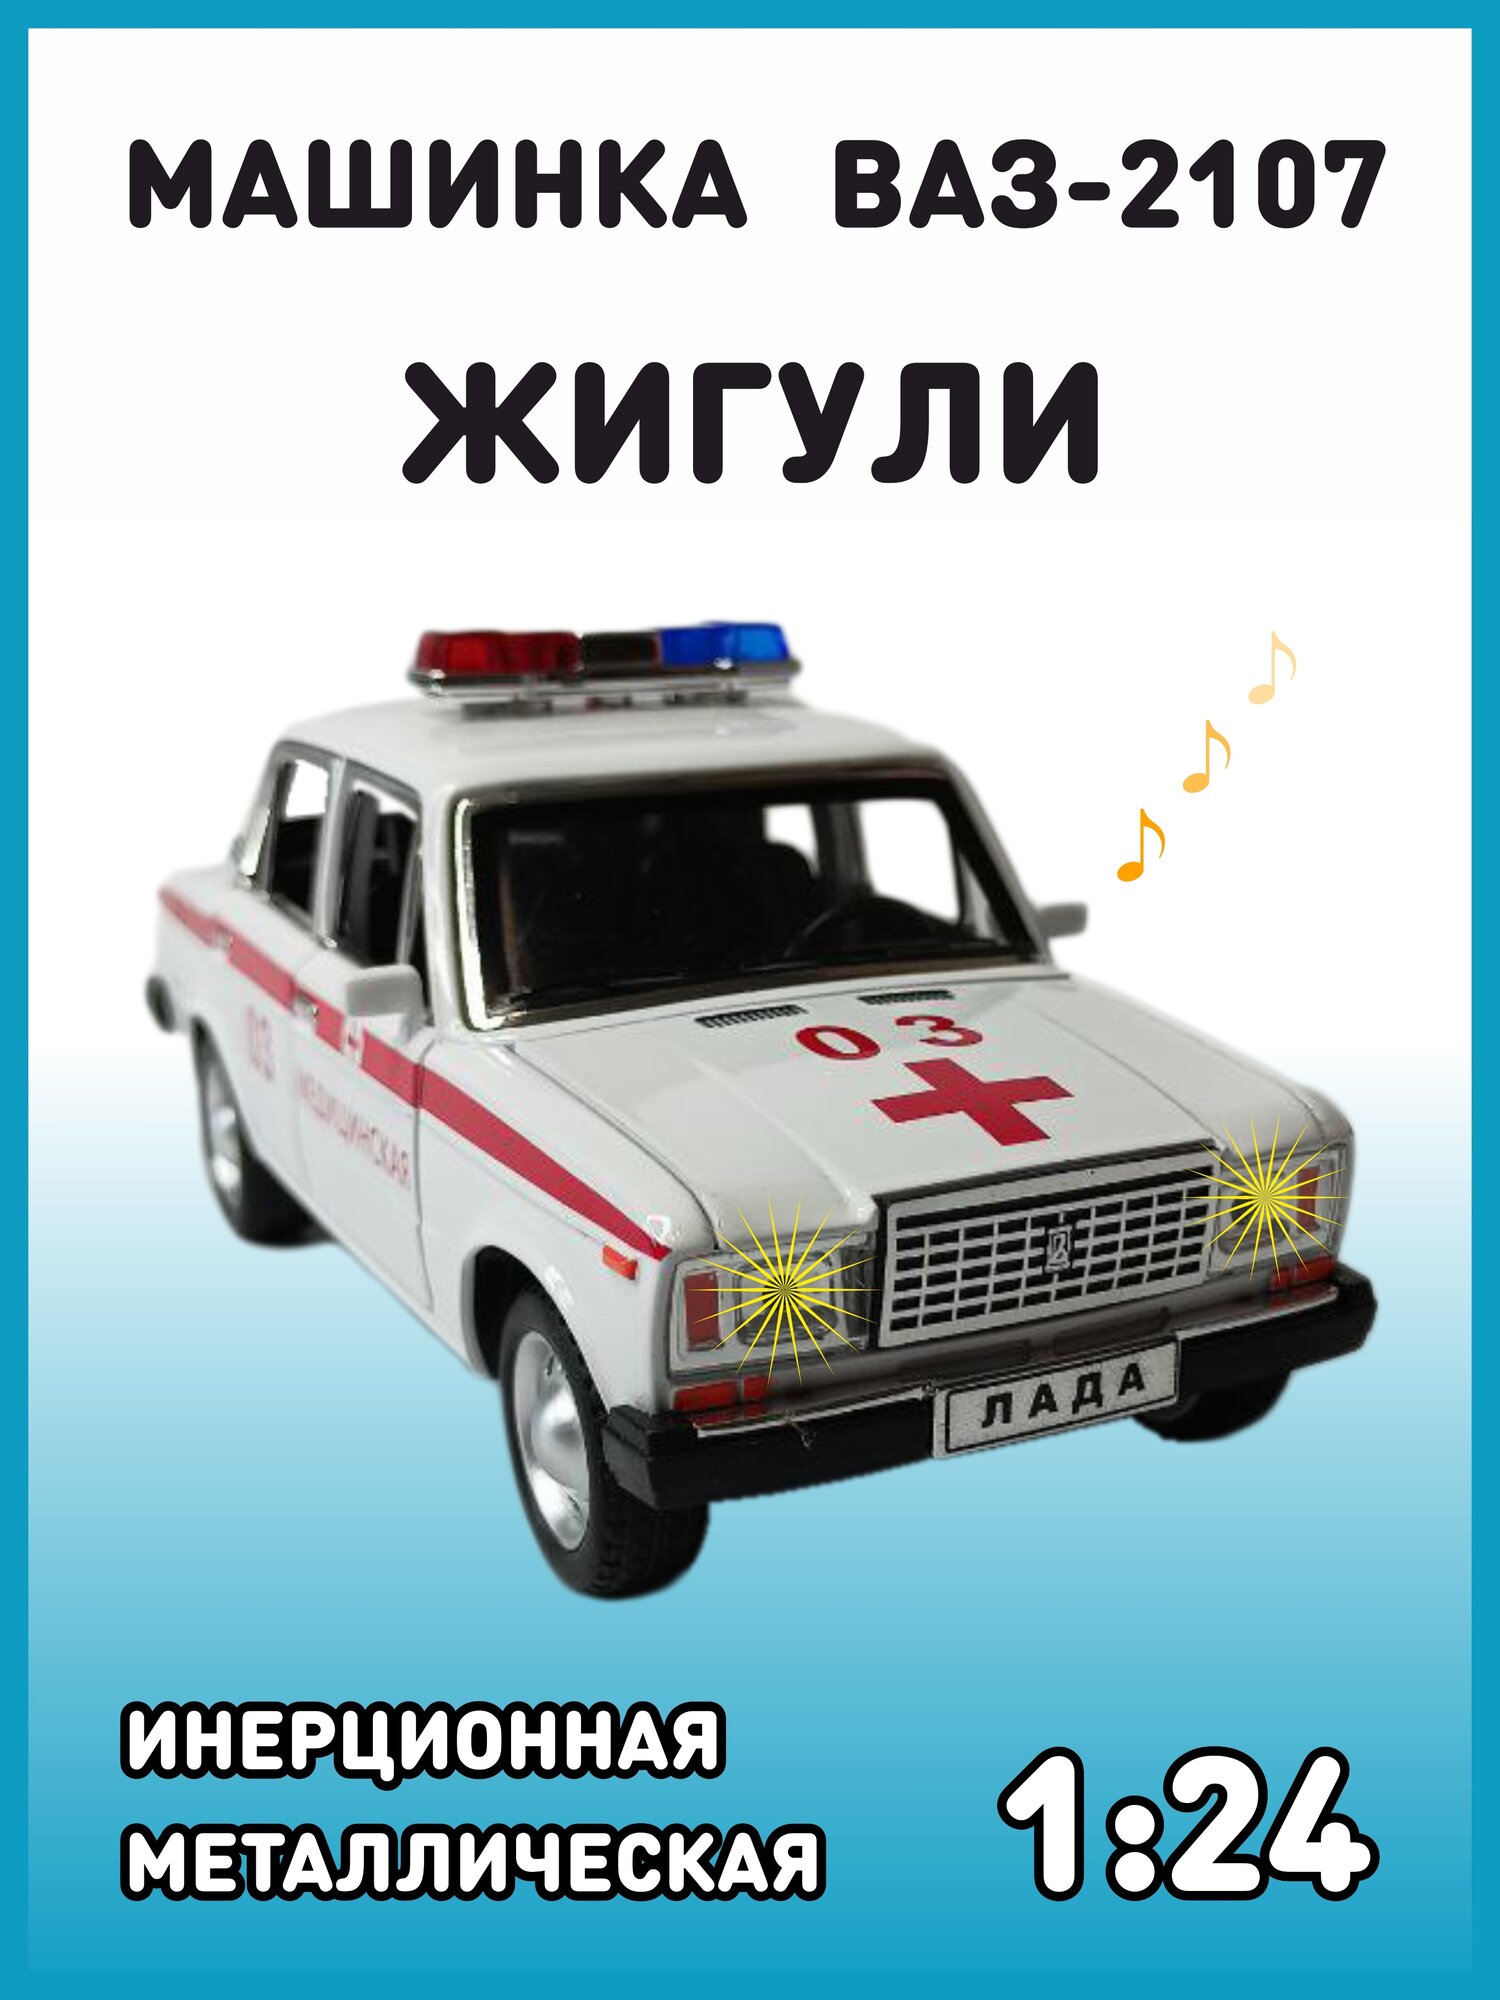 Модель автомобиля Жигули ВАЗ 2107 коллекционная металлическая игрушка масштаб 1:24 бело-красный